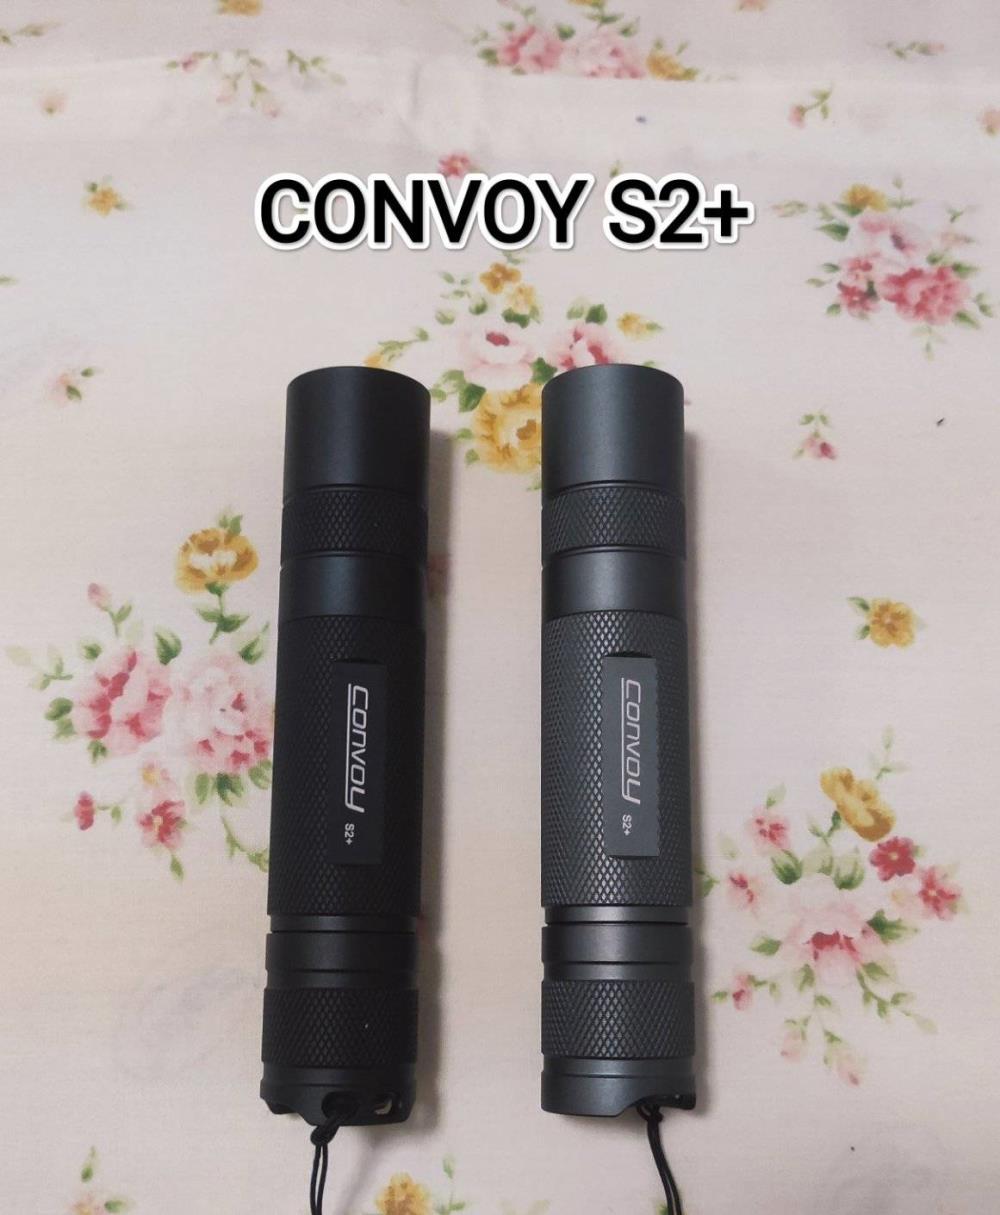 ไฟฉาย,ไฟฉาย convoy s2+,CONVOY S2+,Hardware and Consumable/General Hardware